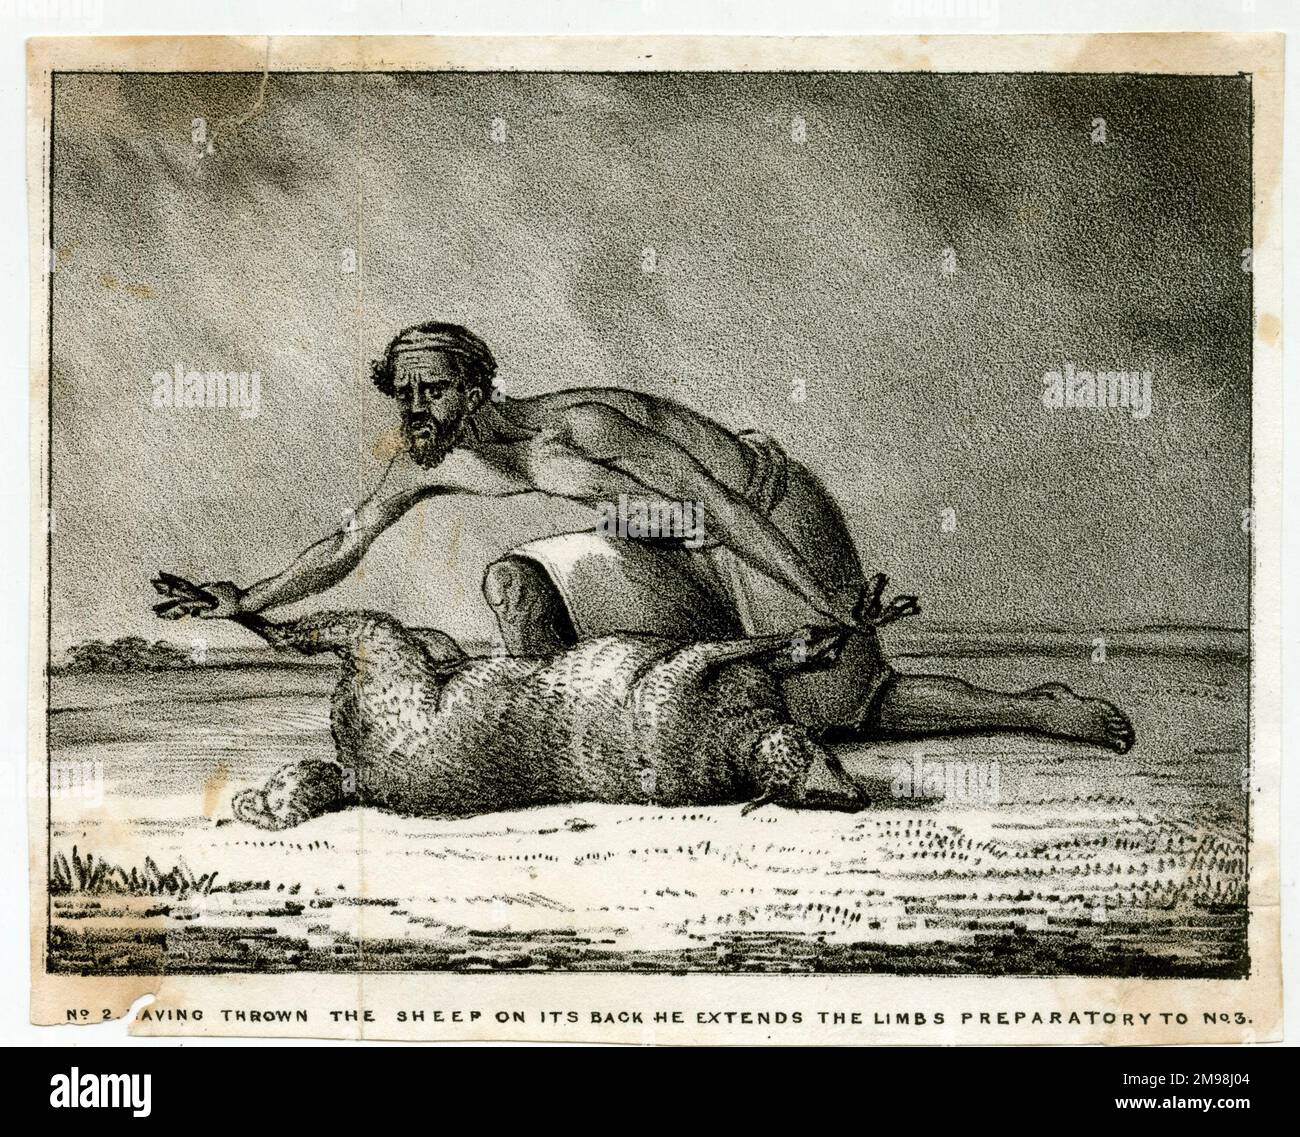 Der Schaffresser von Hindustan, Nr. 2, nachdem er die Schafe auf den Rücken geworfen hatte, streckt er die Gliedmaßen vor Nr. 3 aus. Stockfoto